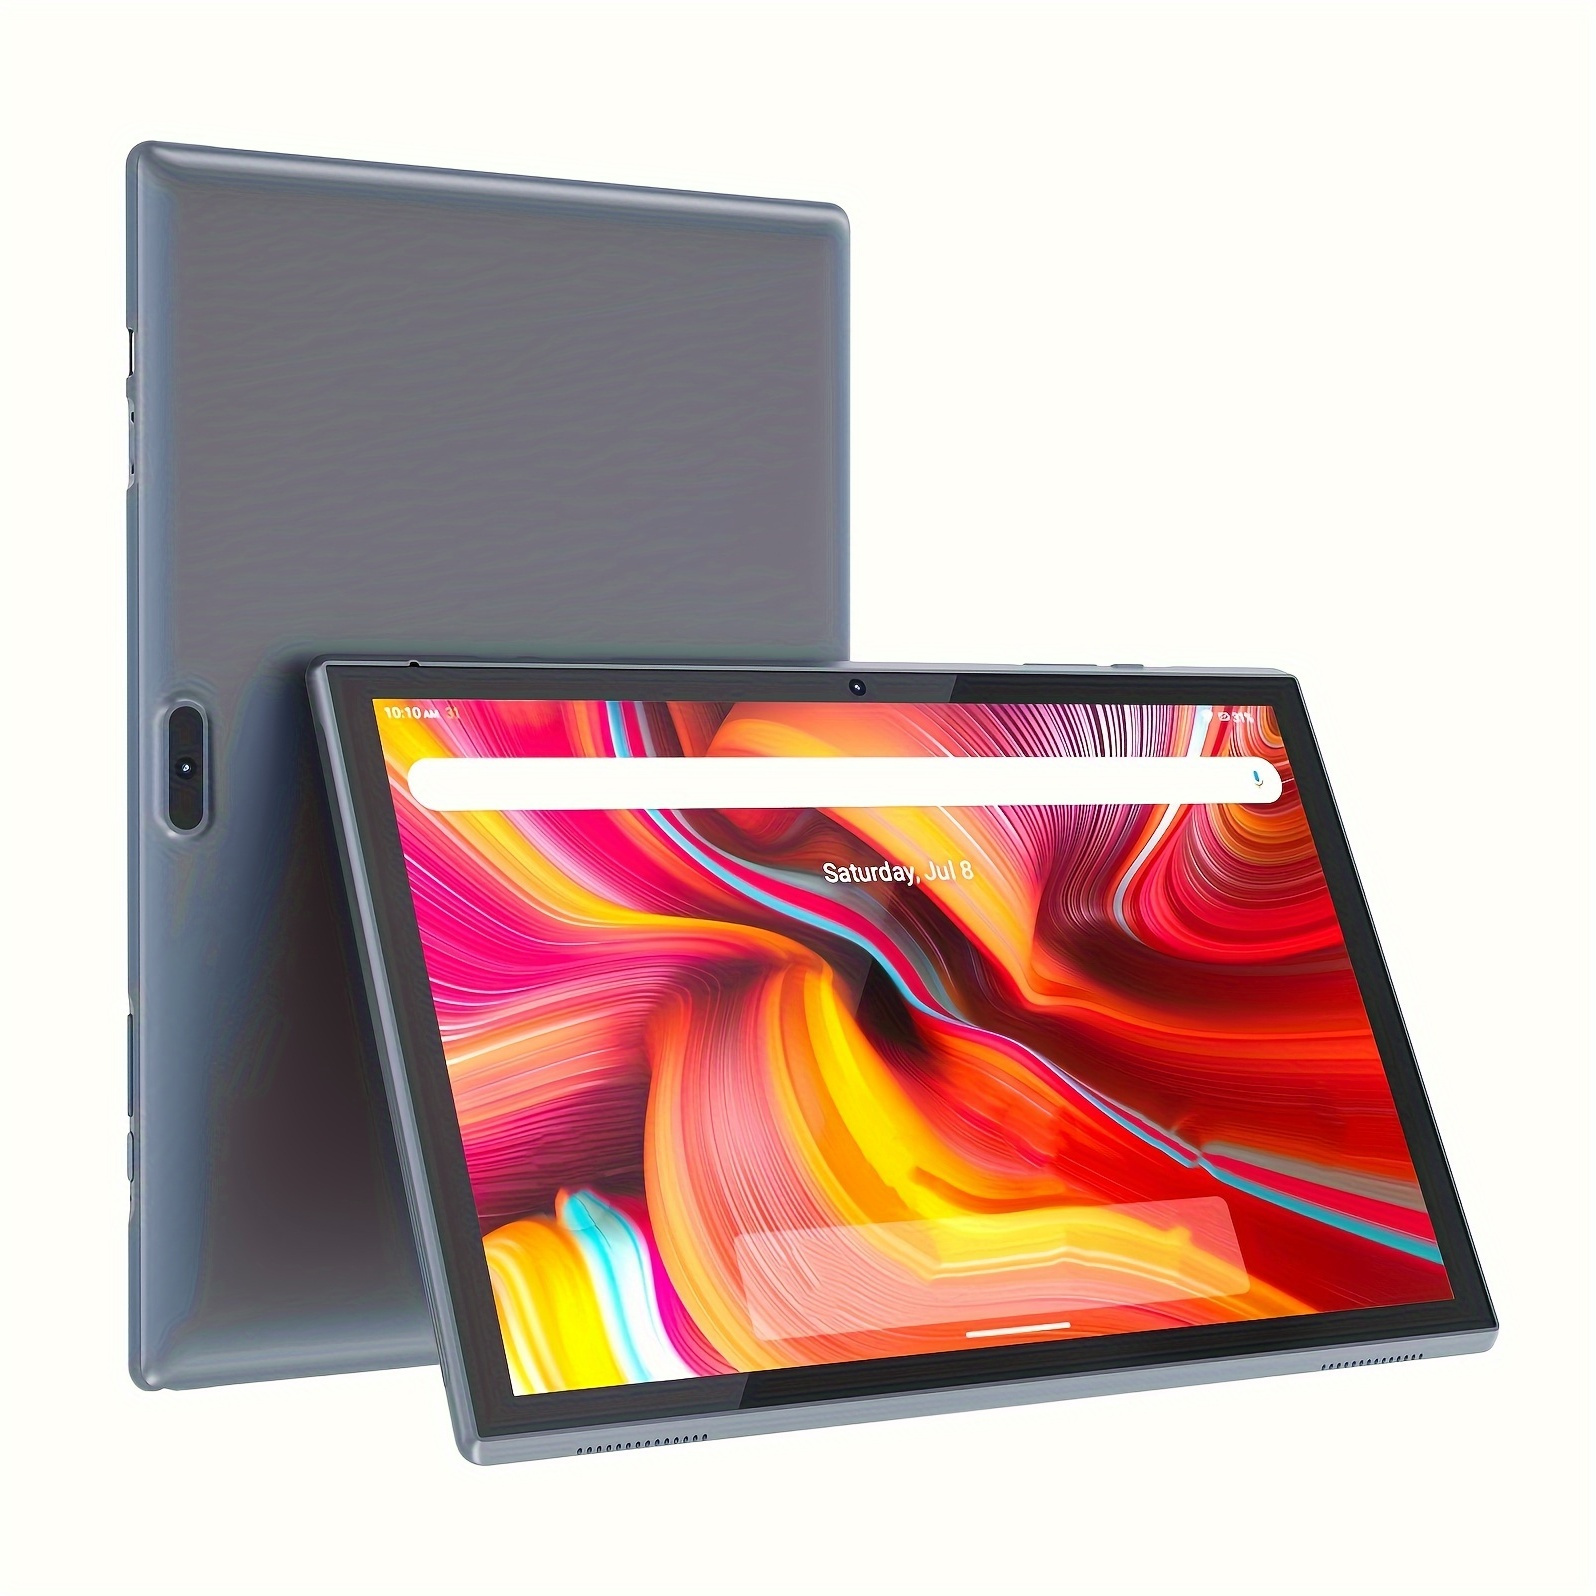 CWOWDEFU Tableta para juegos de 10 pulgadas con teclado Android Tablet Octa  Core 64GB 1080p Full HD INCELL pantalla táctil Tablet 2.4G / 5G WiFi